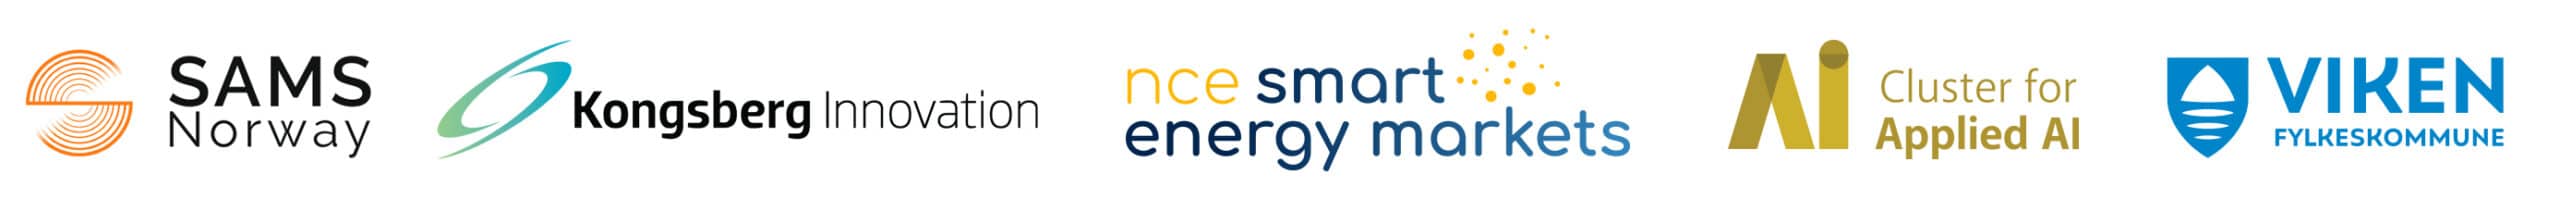 SAMS Norway, Kongsberg Innovation, NCE Smart Energy Markets, Cluster for Applied AI og Viken Fylkeskommune